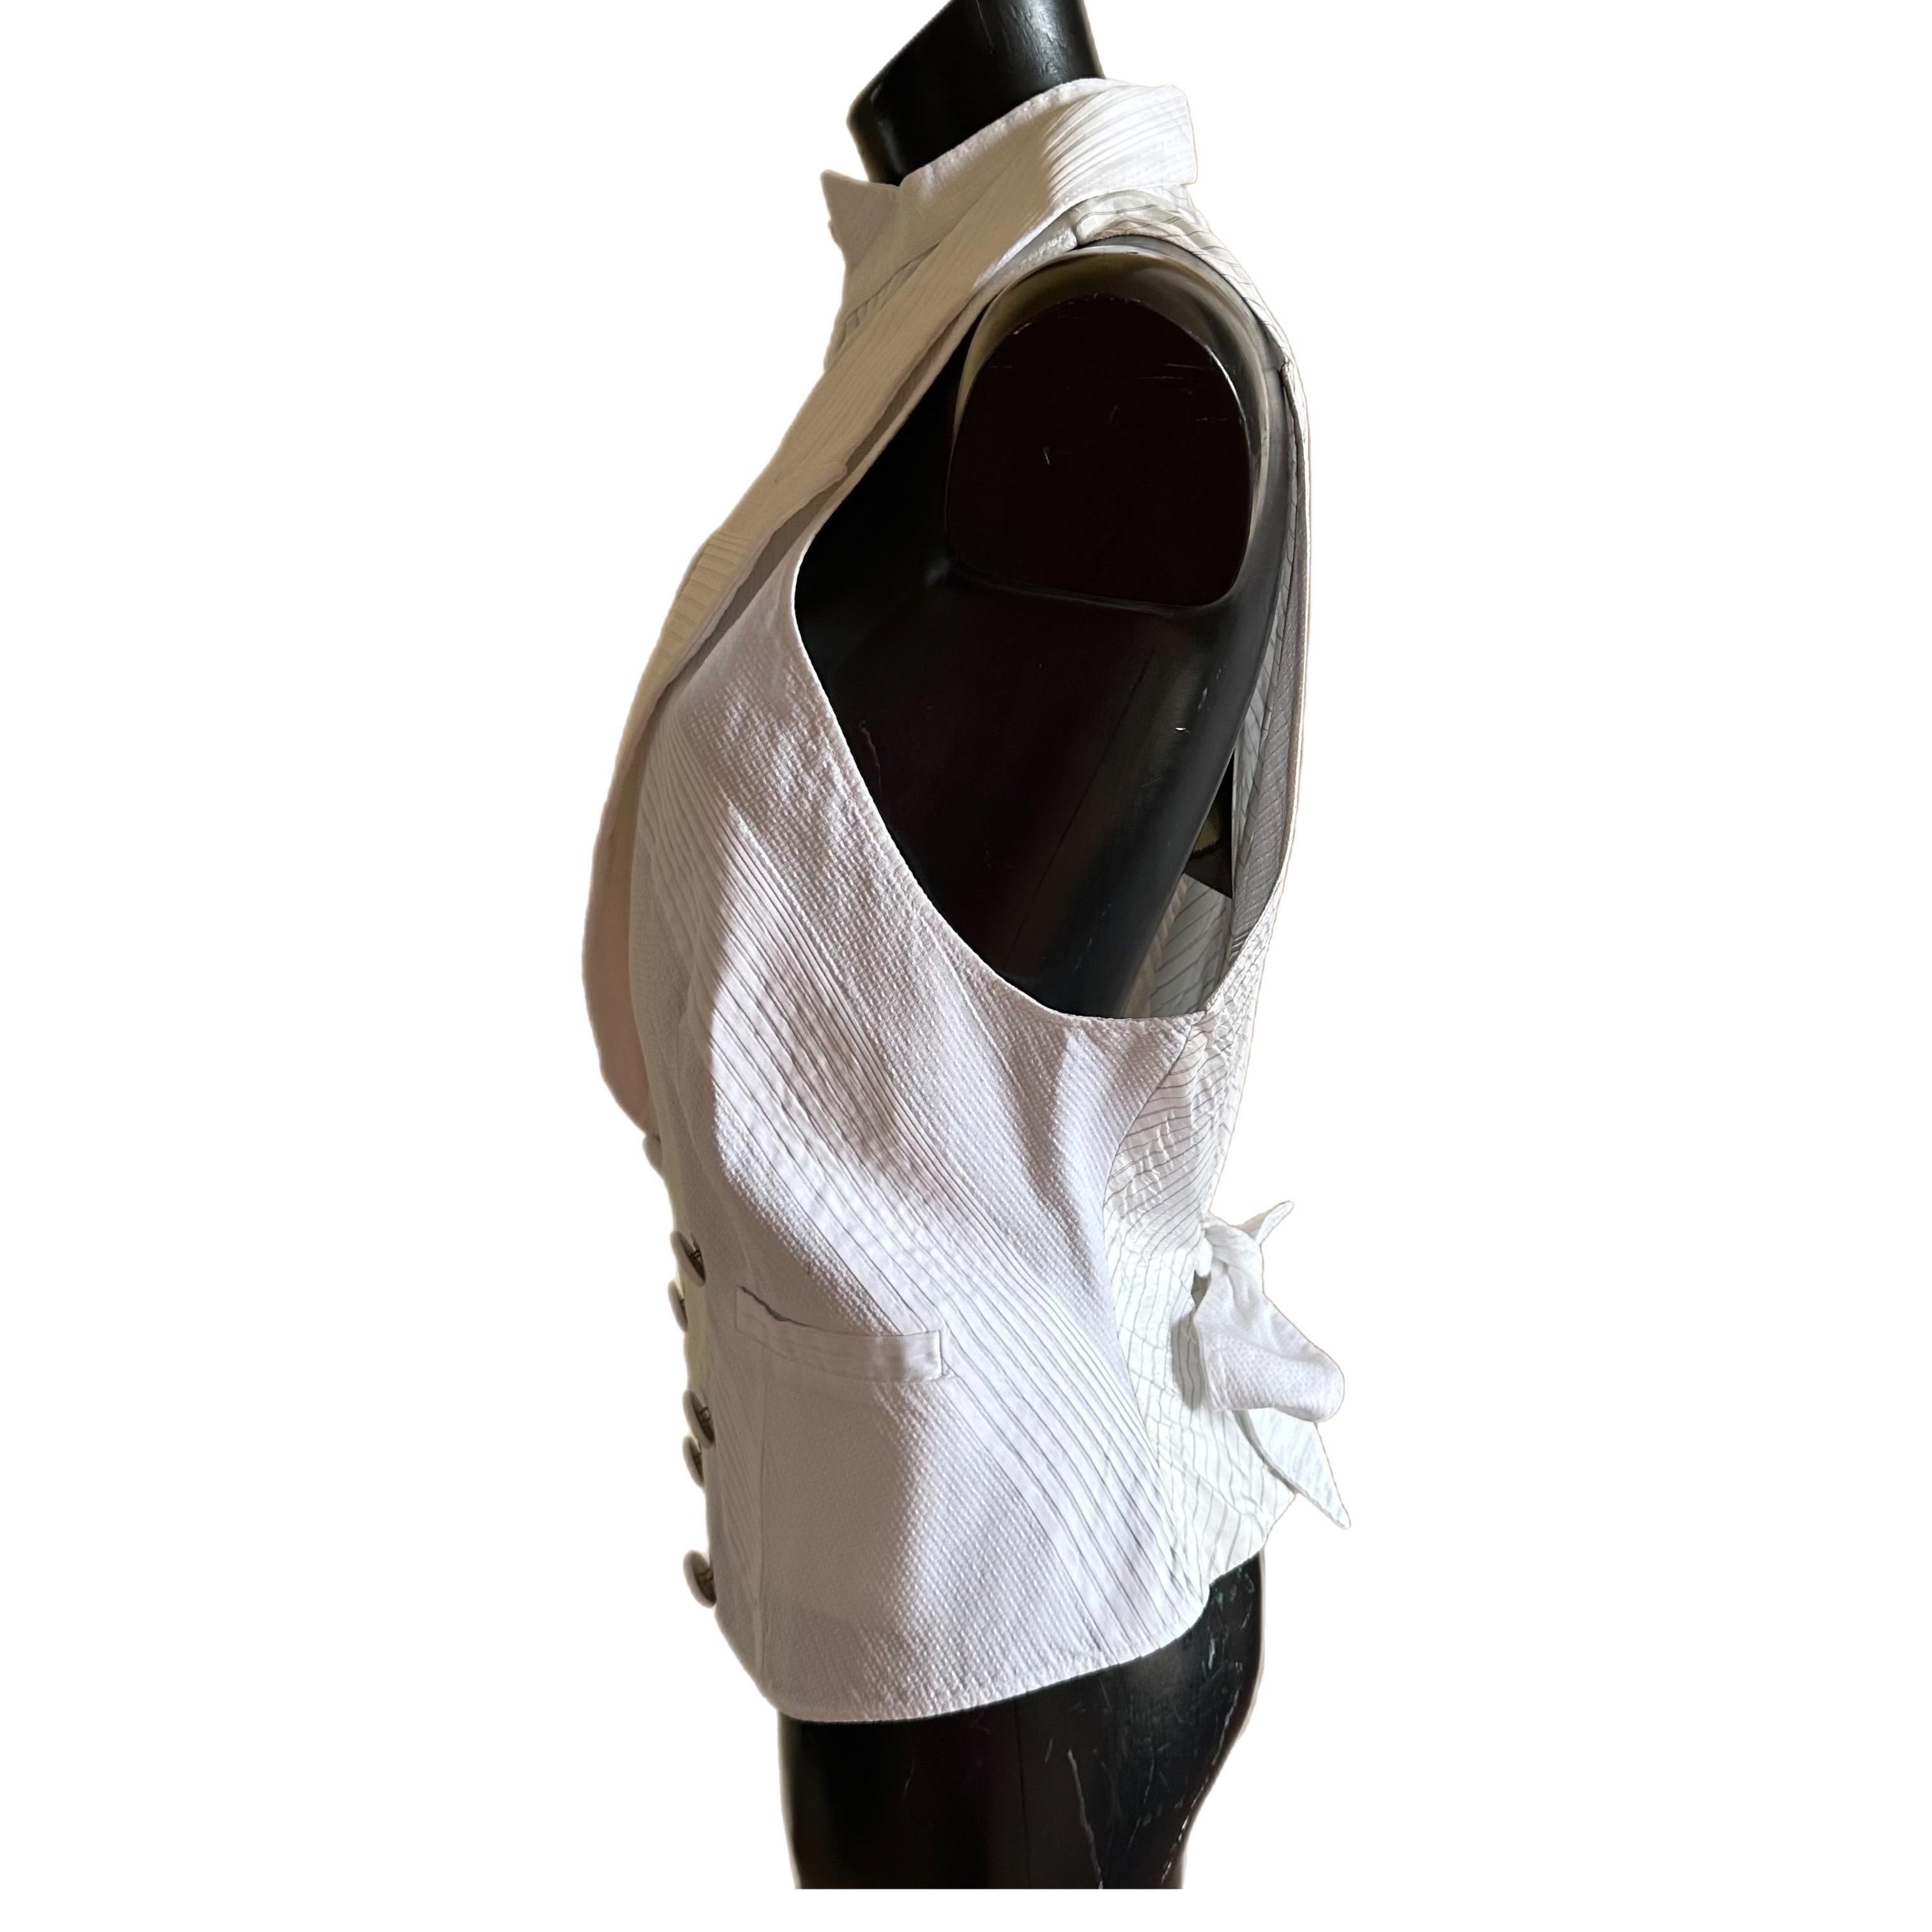 Gilet Mila Schon nuovo , con applicazione a forma di camicia
Misure:
Larghezza 43cm
Lunghezza 62cm
Petto 33cm
